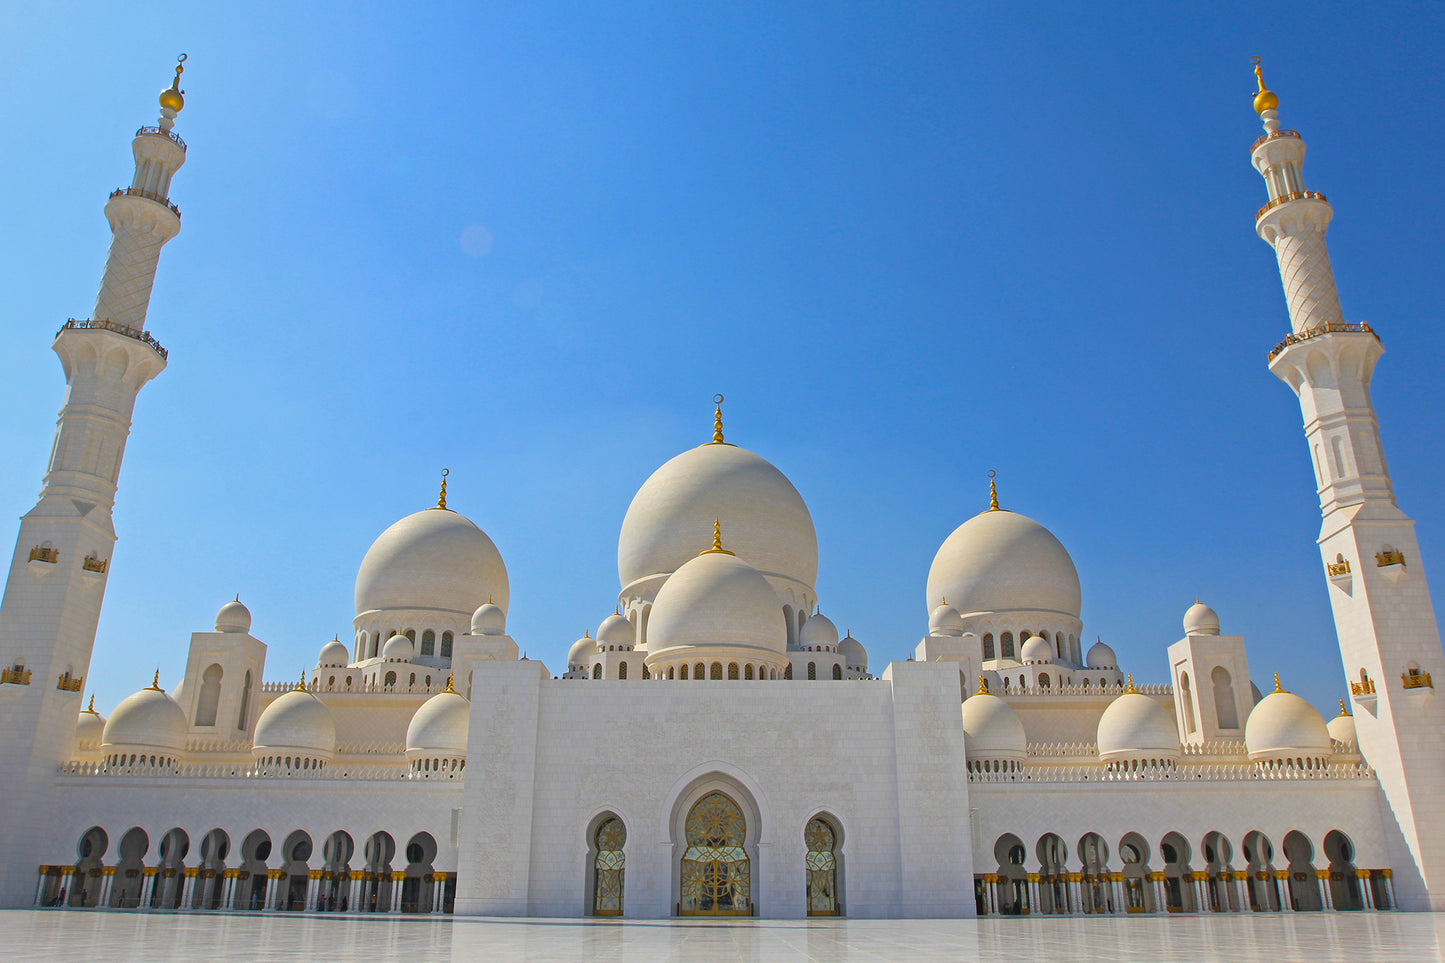 Экскурсия по Абу-Даби на целый день с посещением большой мечети шейха Зайда, парка Феррари Уорлд, острова Яс, набережной и волноломов, дворца Эмирейтс из Абу-Даби